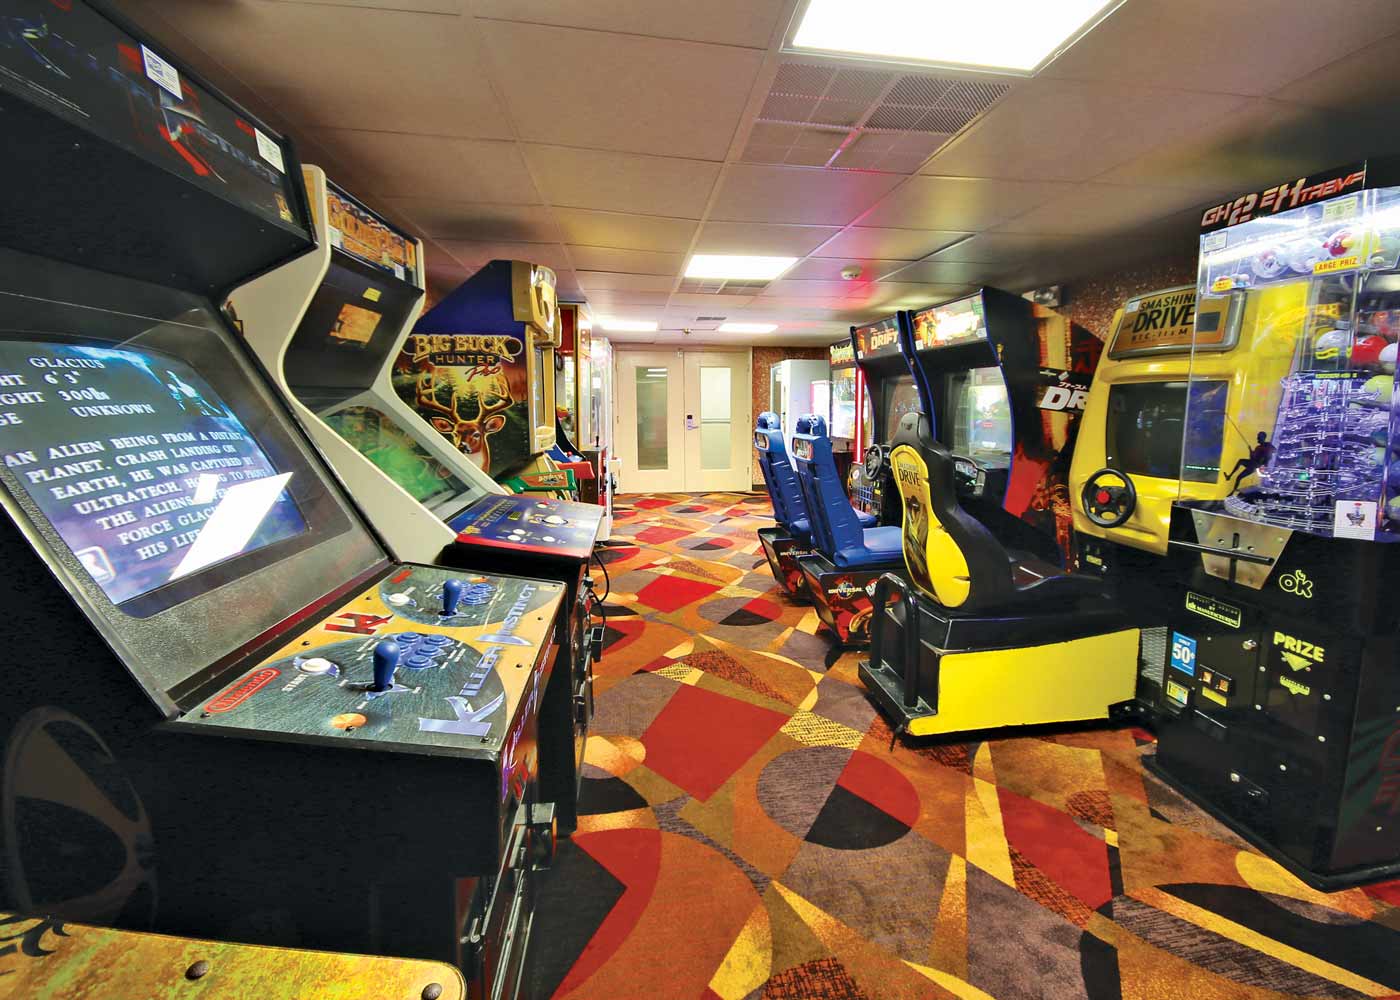 Quality inn 54 arcade room